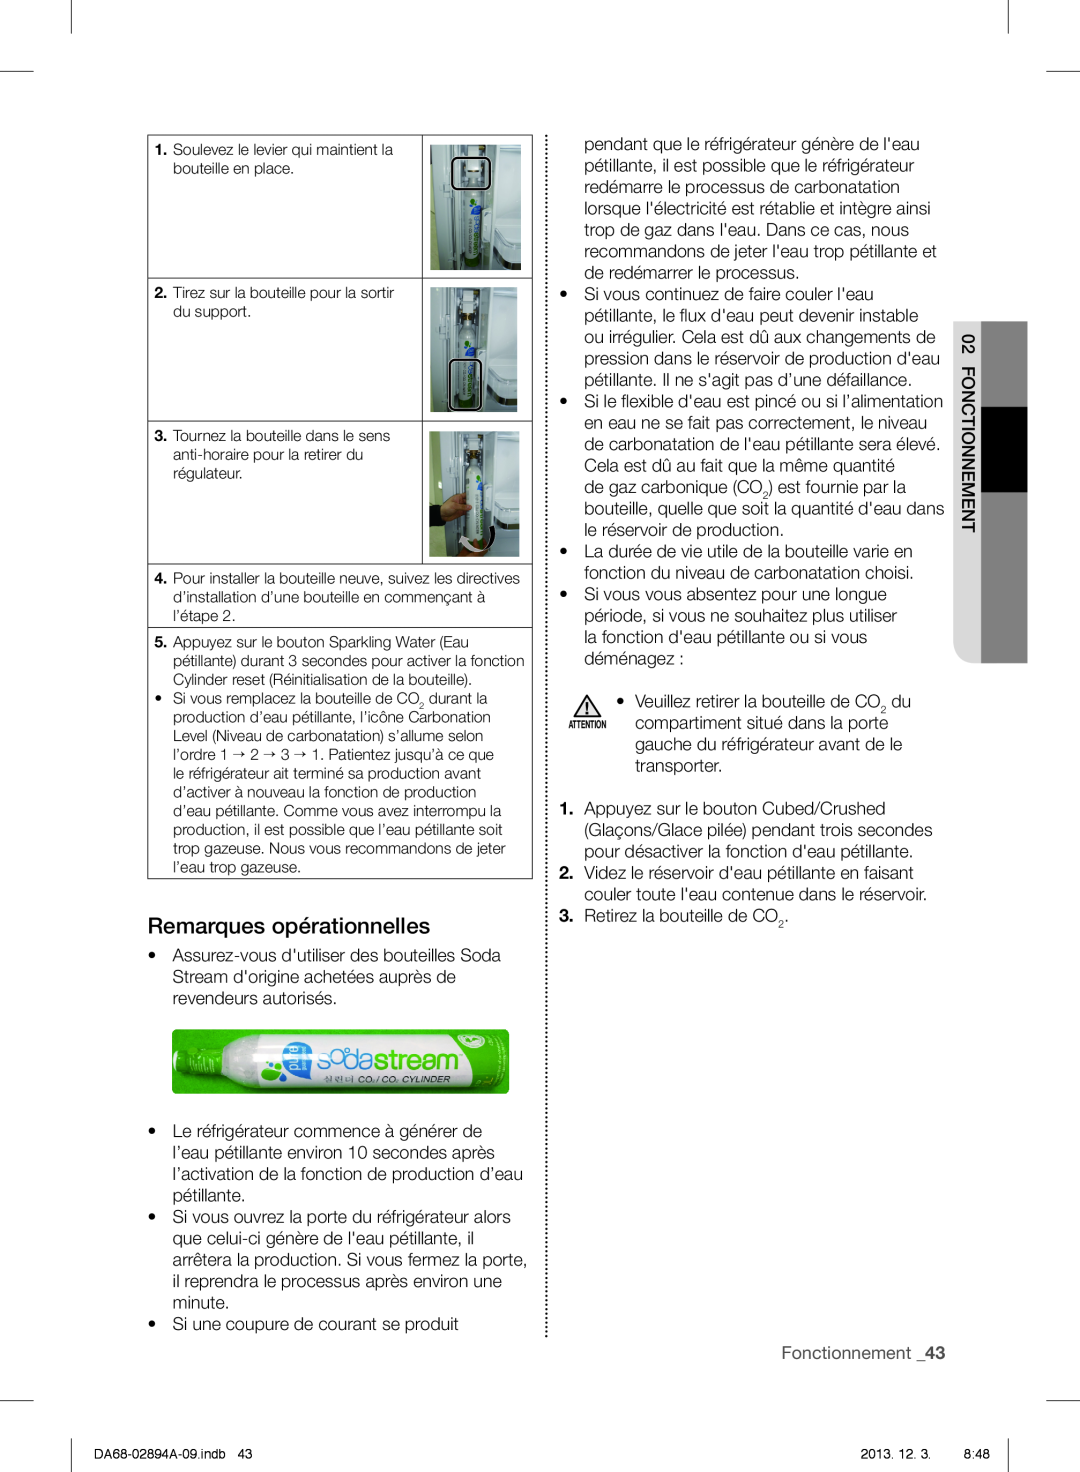 Samsung RF31FMEDBSR, RF31FMESBSR, RF31FMEDBBC user manual Remarques opérationnelles, Fonctionnement 